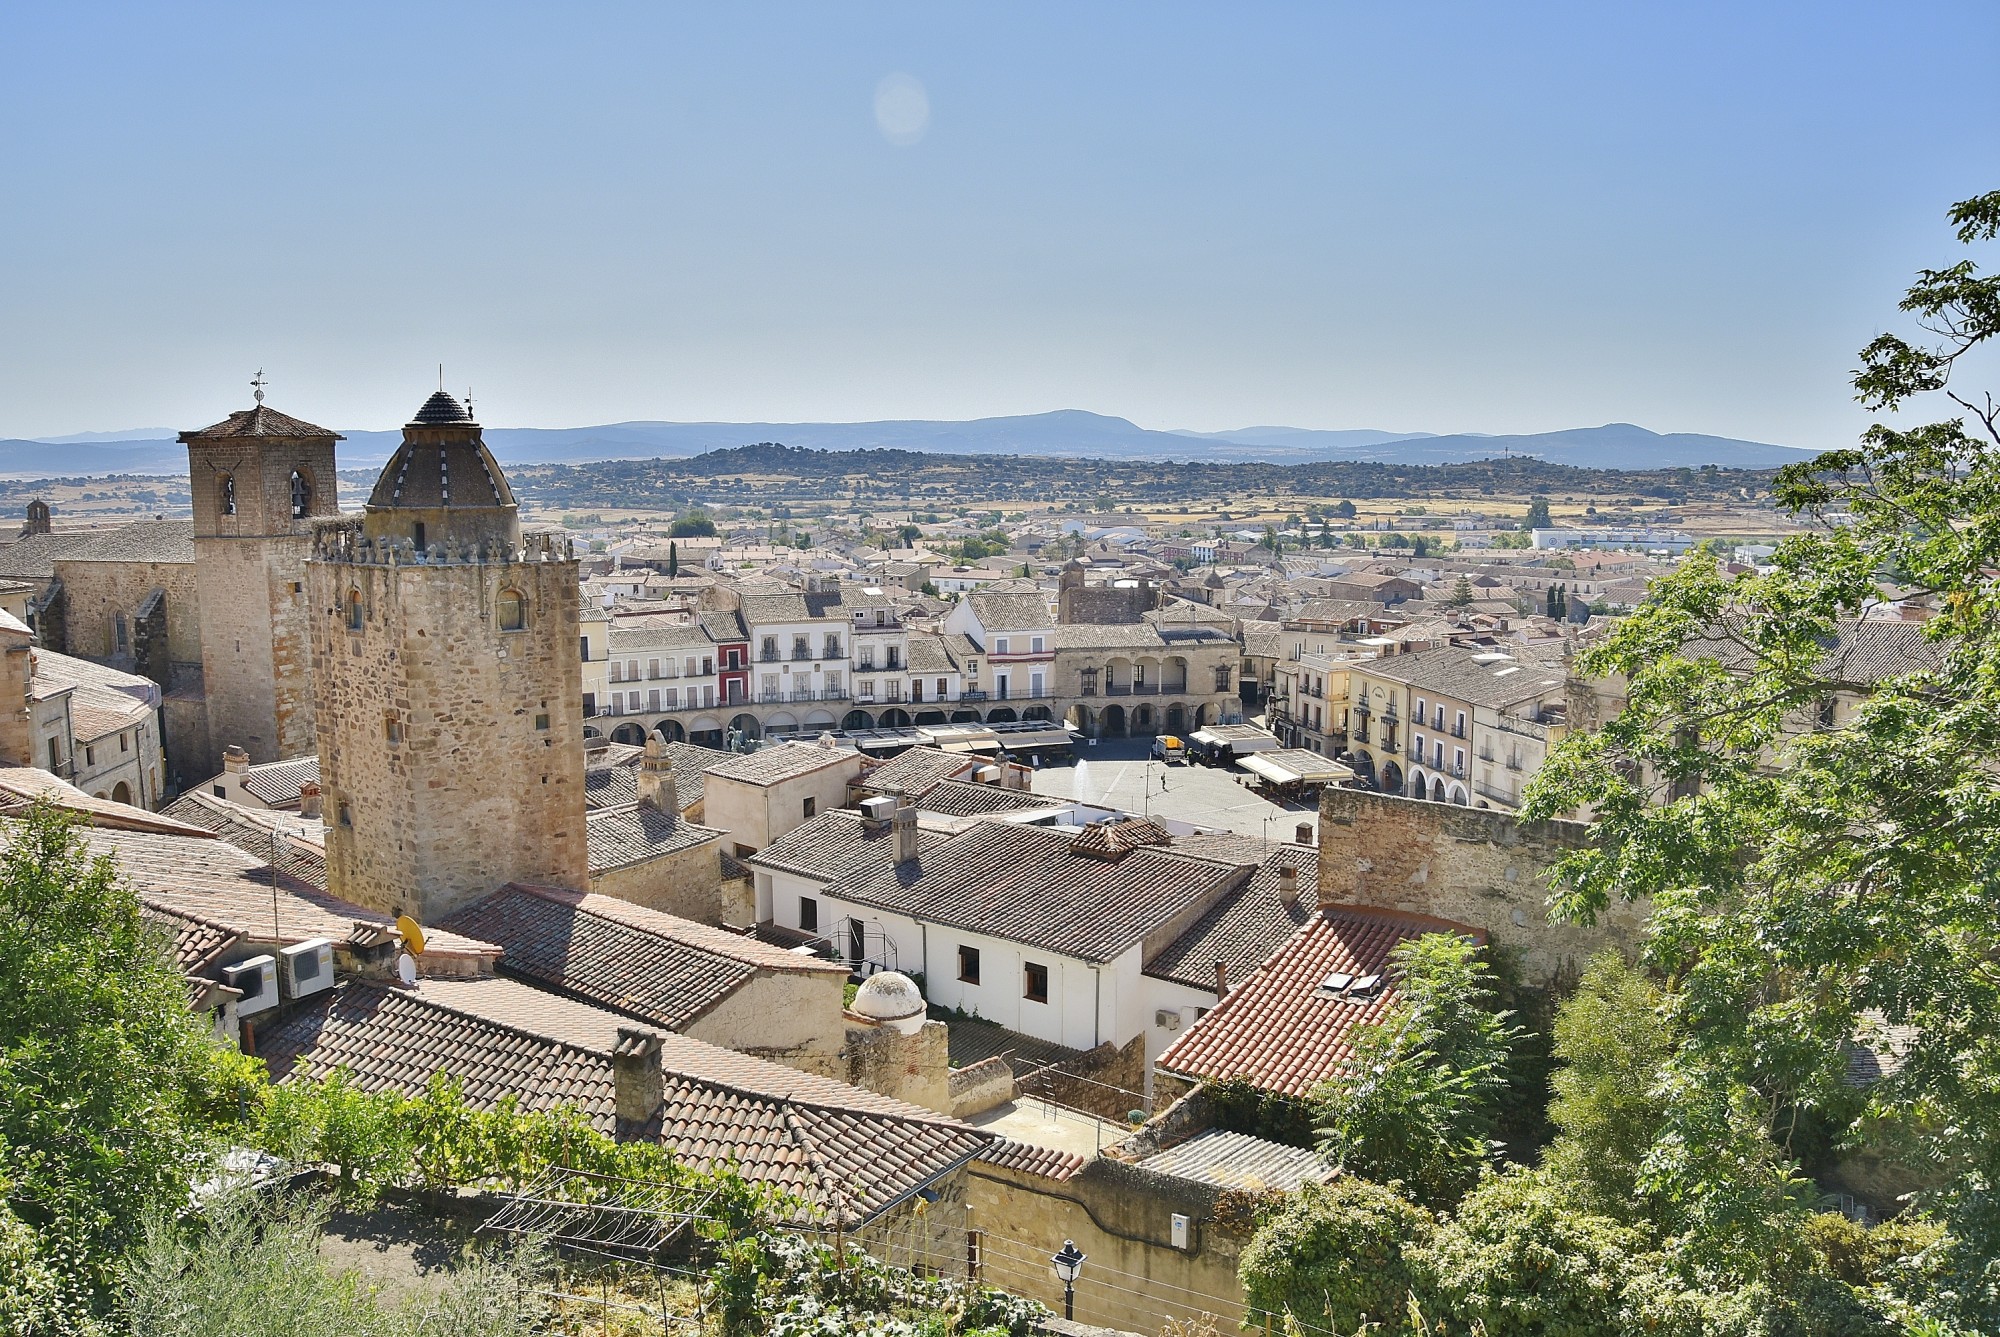 Foto: Vistas desde la alcazaba - Trujillo (Cáceres), España